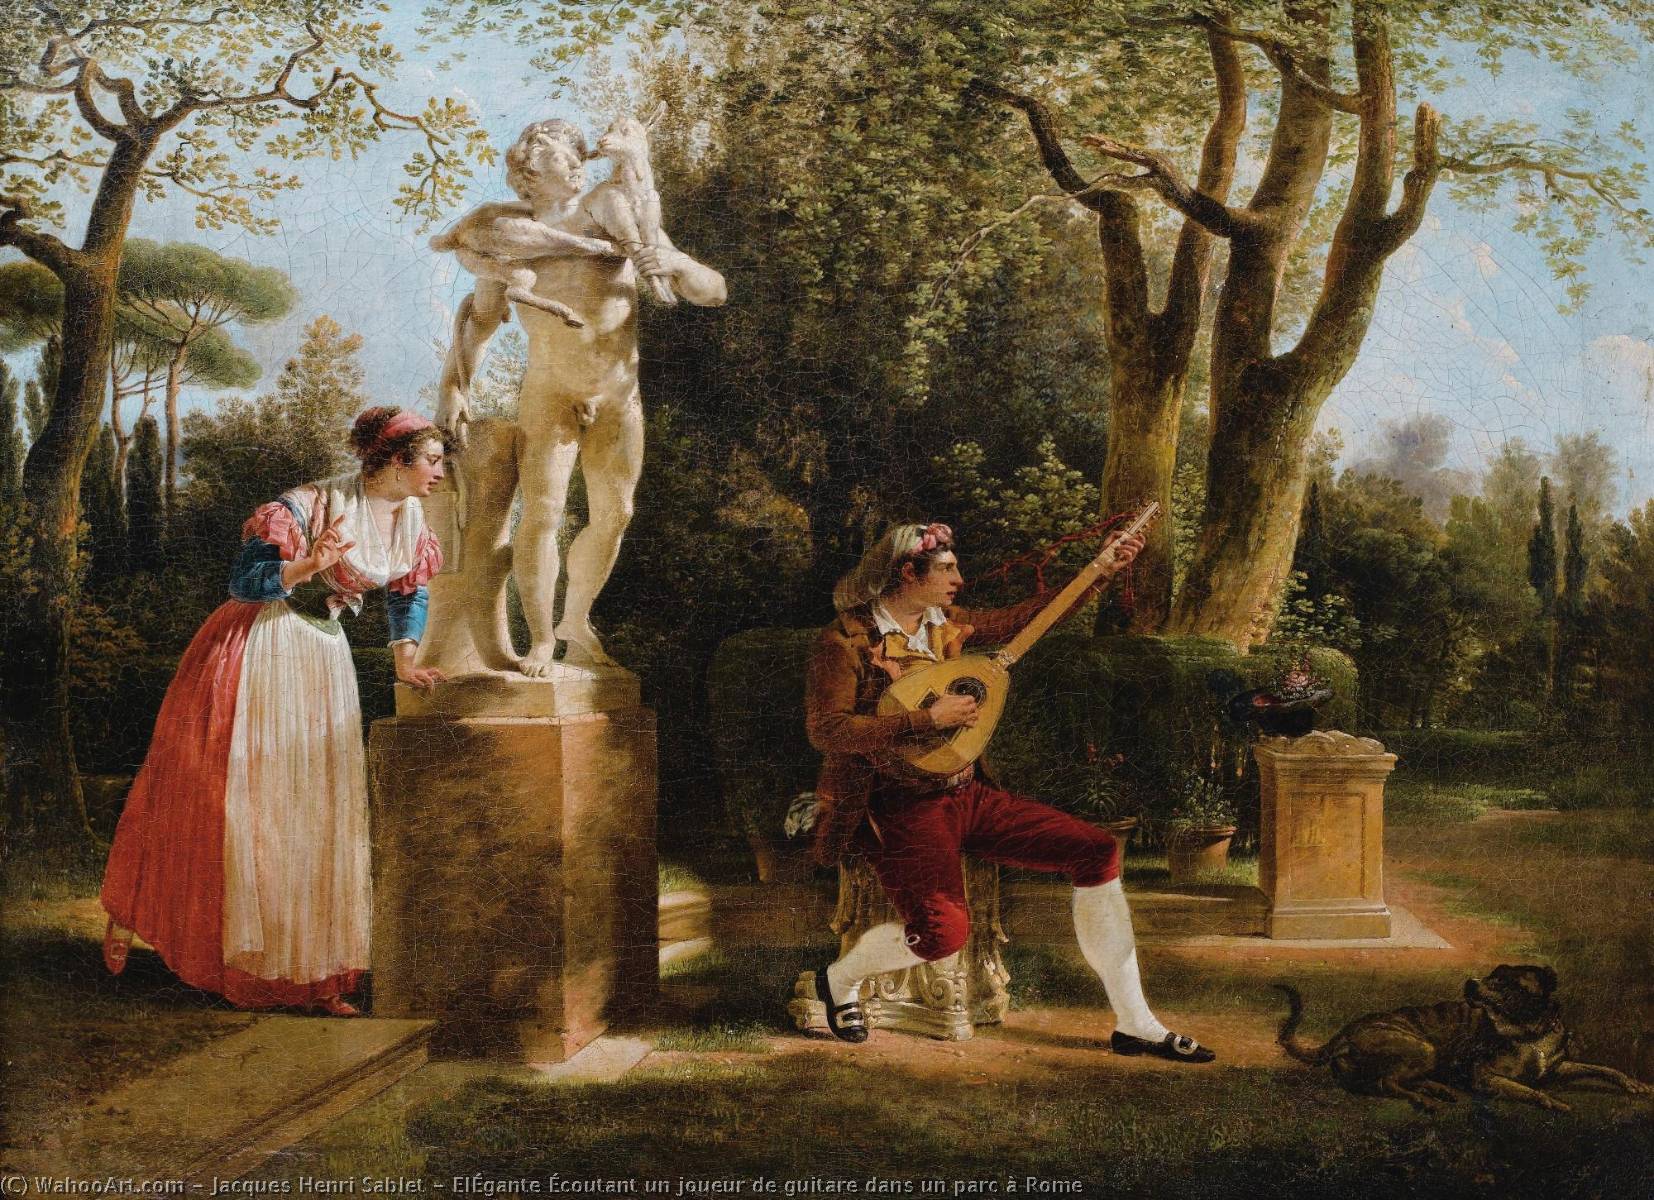 Wikioo.org - The Encyclopedia of Fine Arts - Painting, Artwork by Jacques Henri Sablet - ElÉgante Écoutant un joueur de guitare dans un parc à Rome